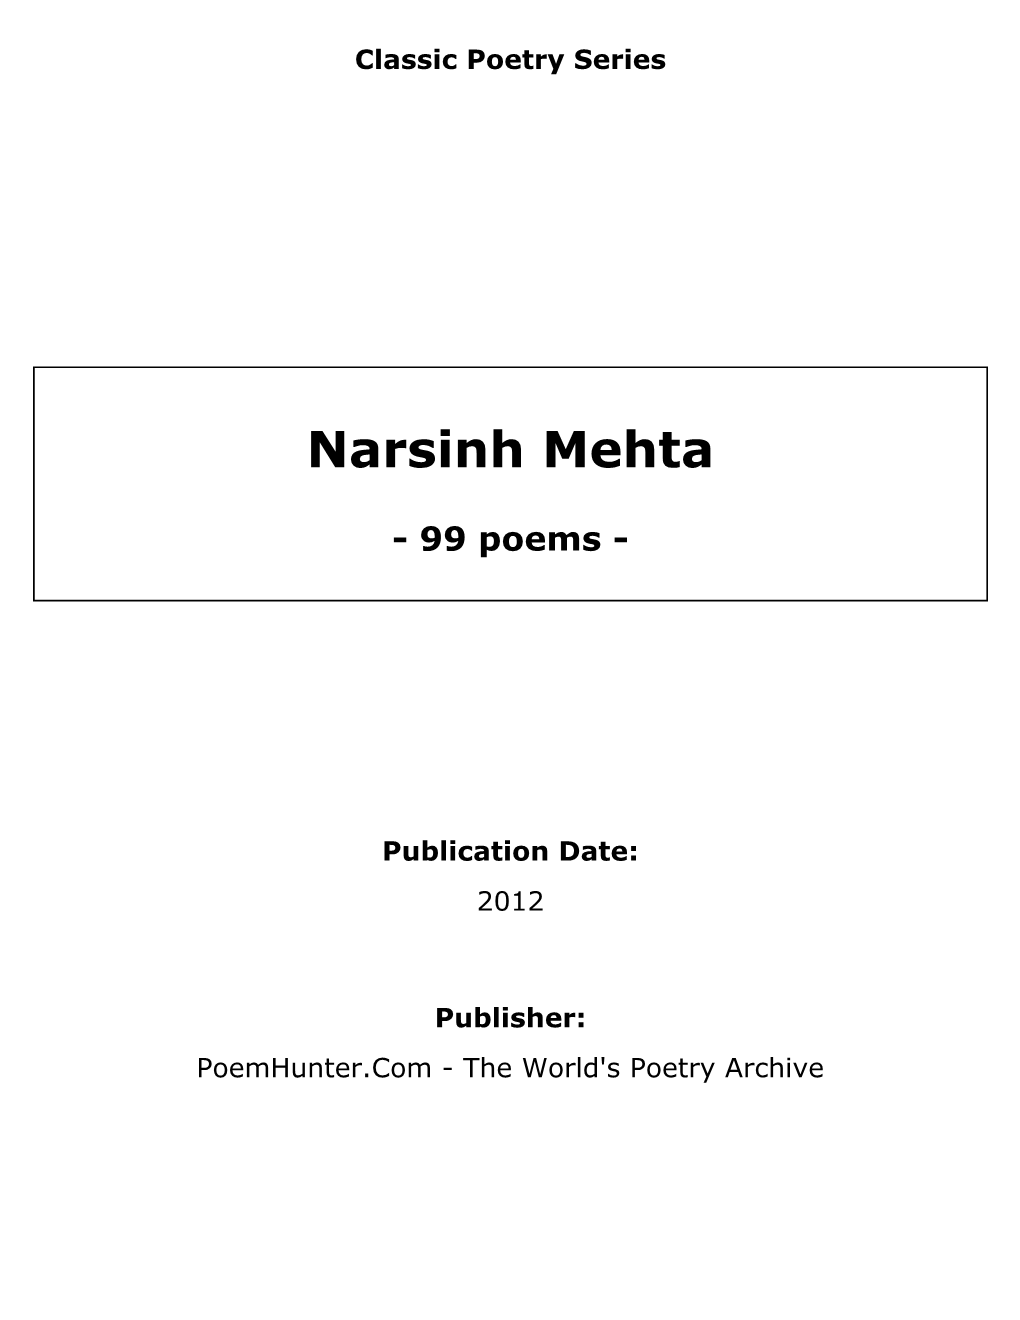 Narsinh Mehta